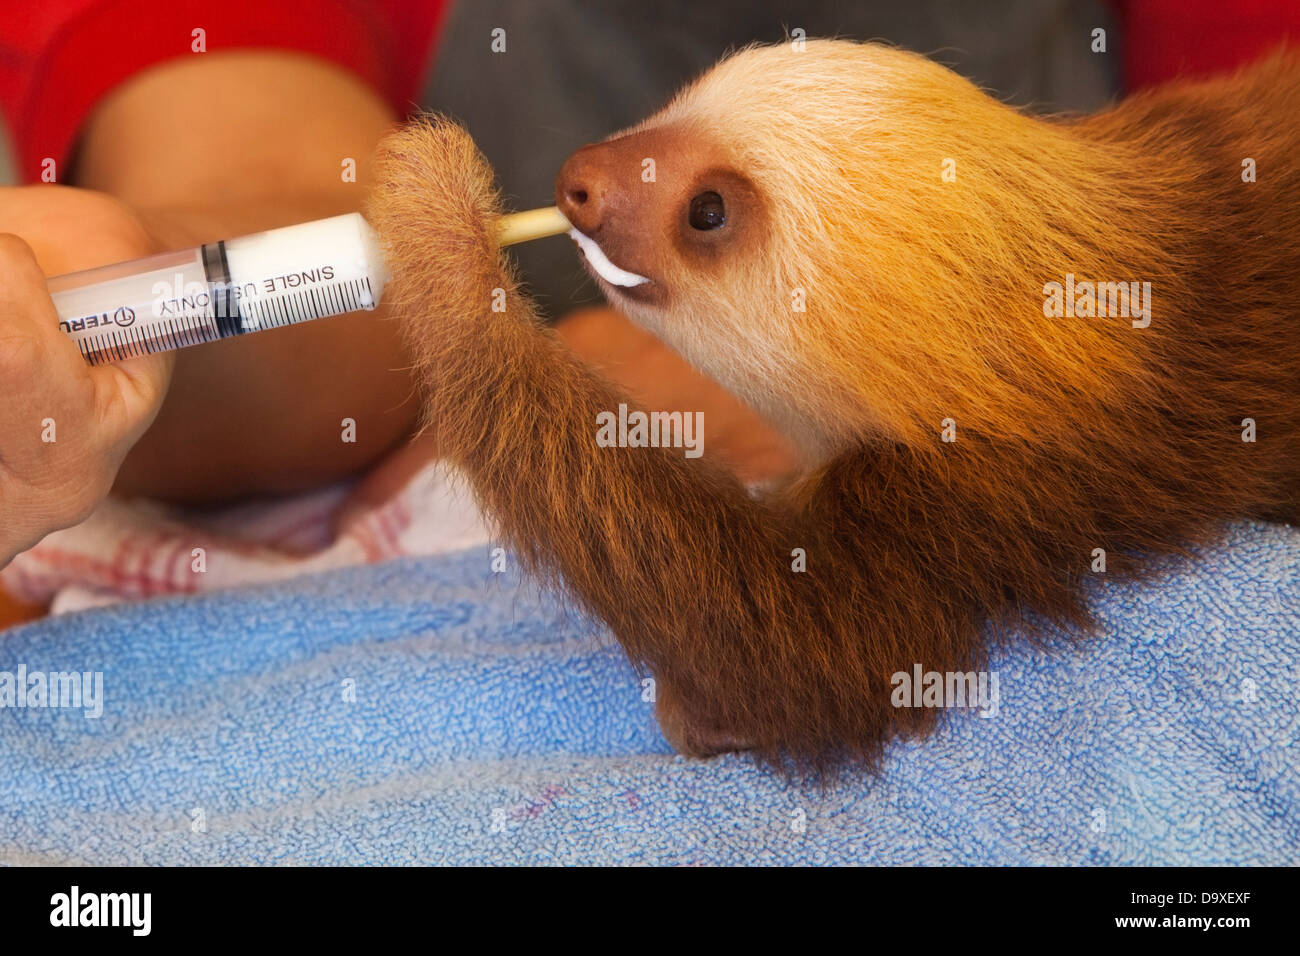 Un gardien nourrissant le lait Sloth (Choloepus hoffmanni) à deux doigts de l'orphelin Hoffmann à travers une seringue au sanctuaire Sloth au Costa Rica Banque D'Images